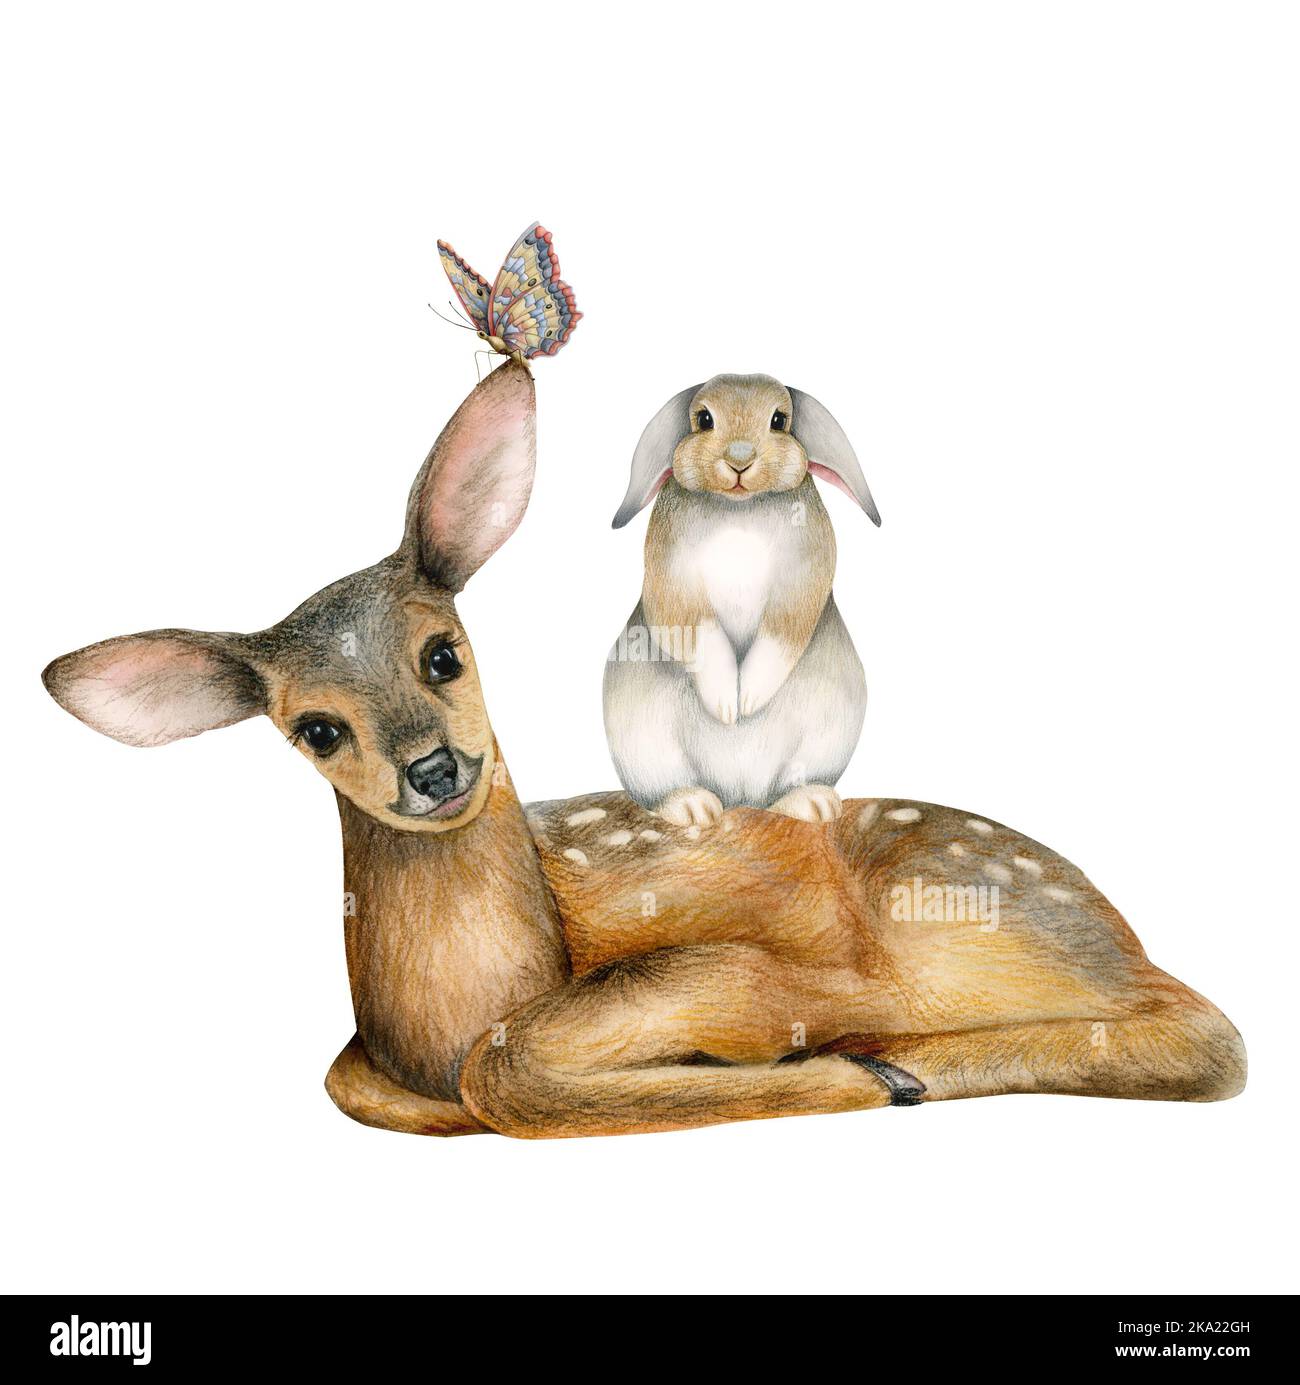 Animali della foresta cute che siedono insieme, illustrazione con piccolo cervo, coniglio e farfalla per il poster della parete della stanza del bambino o inviti dell'acquazzone del bambino Foto Stock